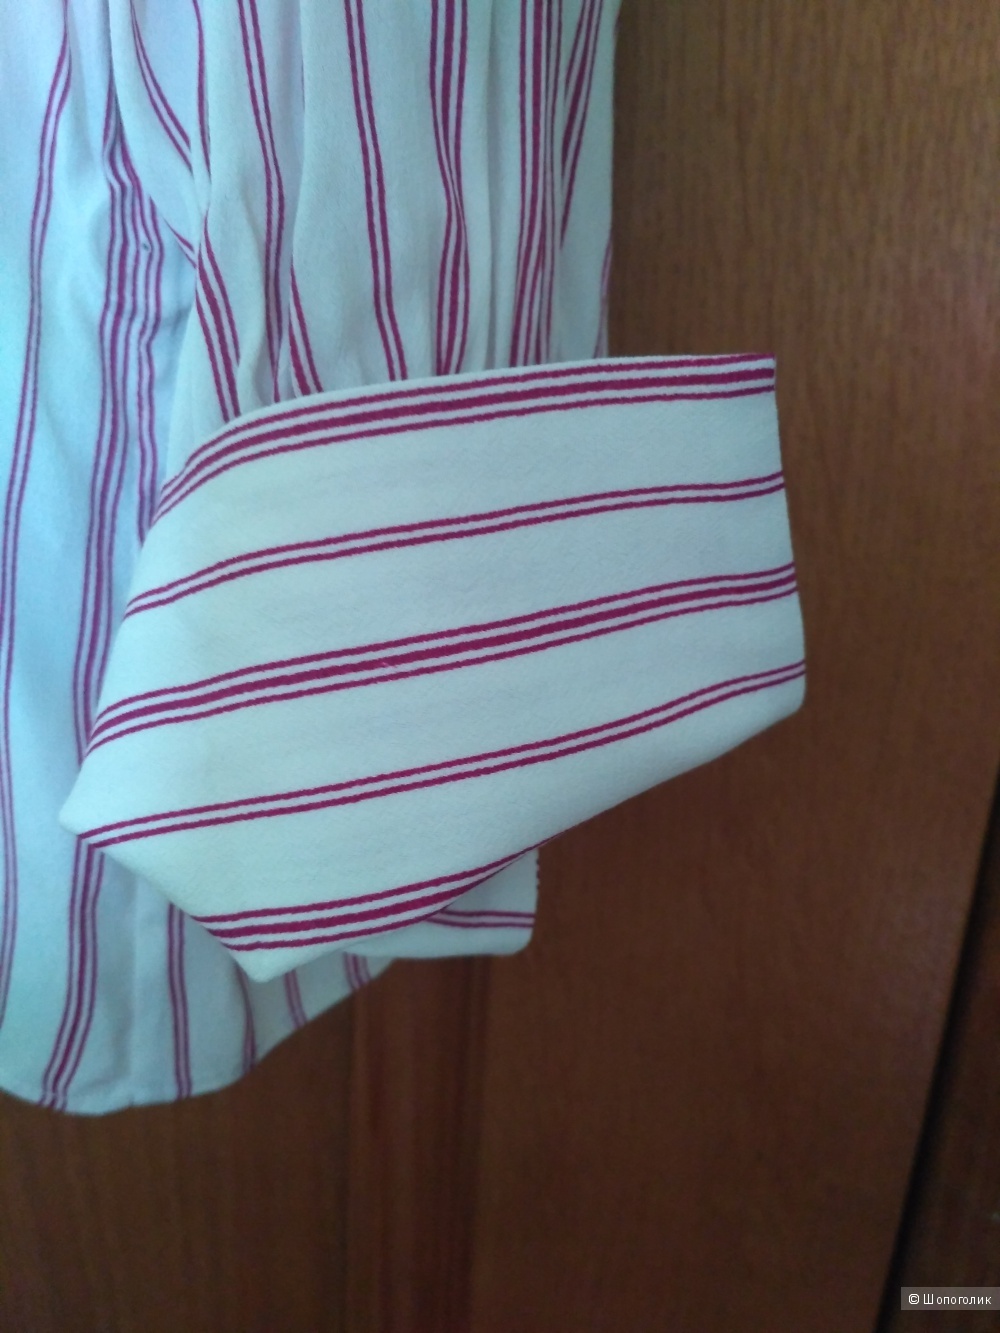 Блузка/рубашка MASSIMO DUTTI, размер EUR 42, USA 10 на 46-48 RUS